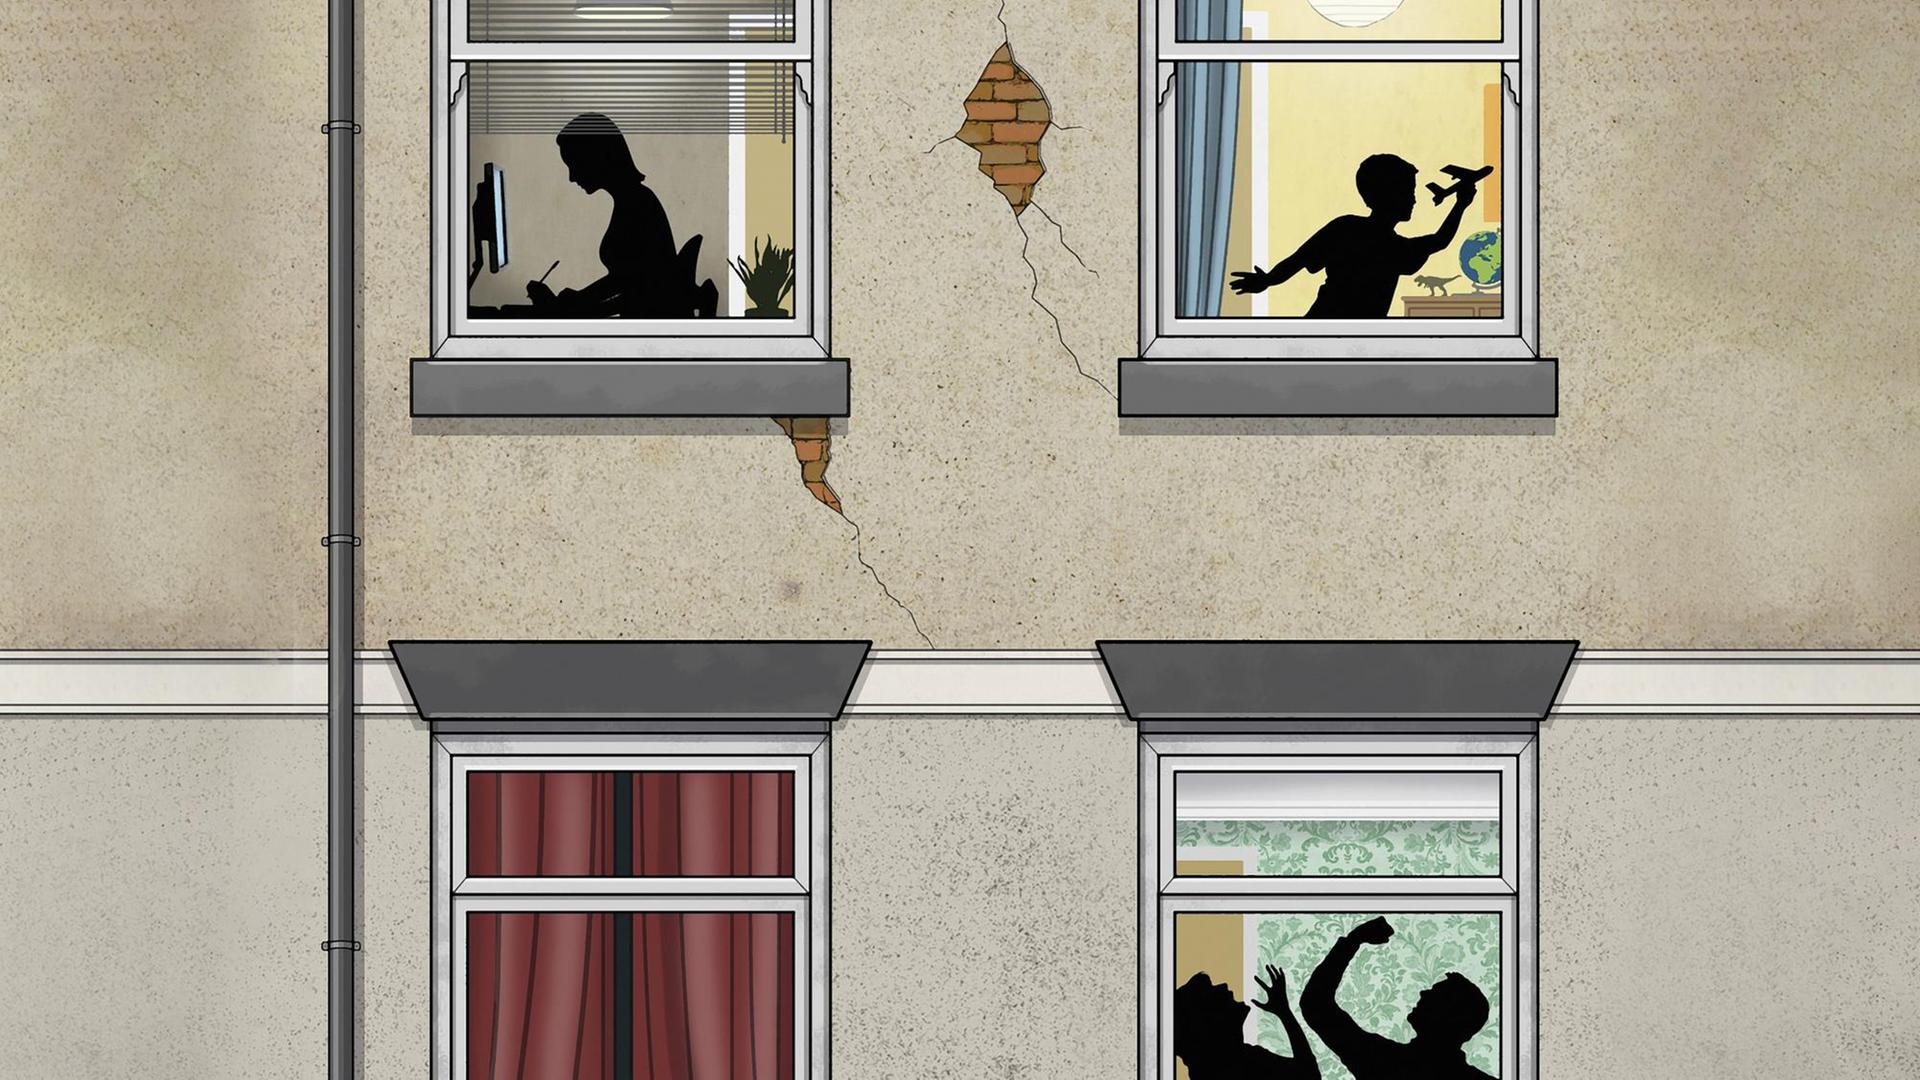 Illustration: Mann schlägt Frau hinter Fensterscheibe mit Junge und Mädchen im oberen Stockwerk.